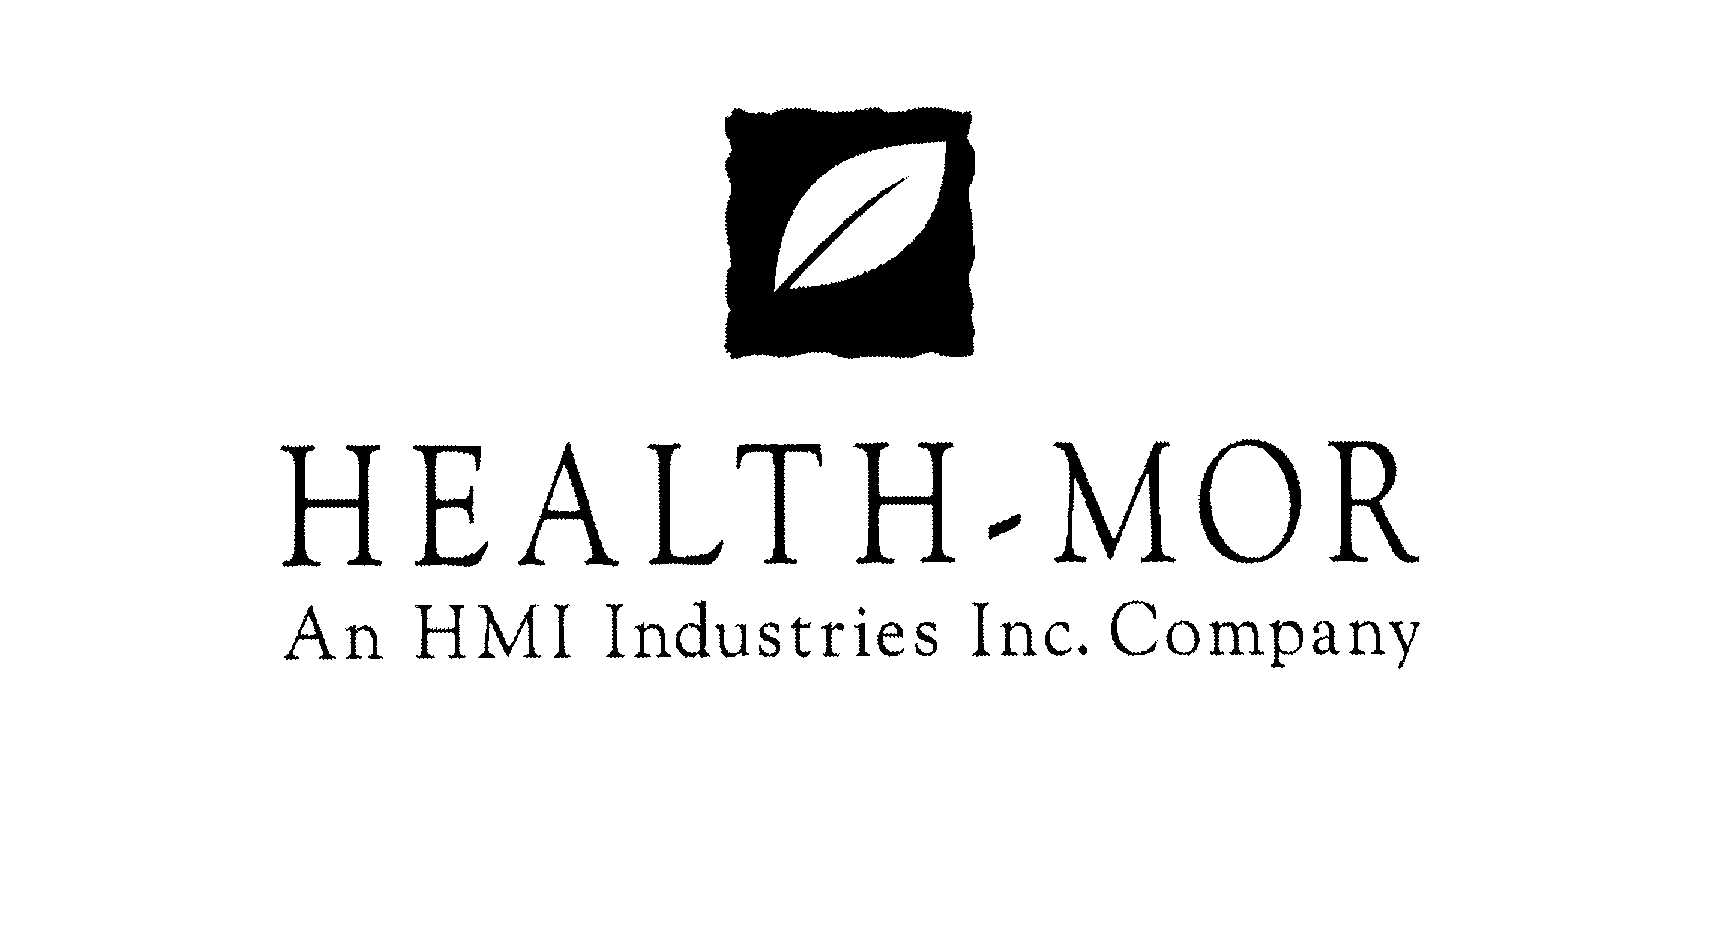  HEALTH-MOR AN HMI INDUSTRIES INC. COMPANY